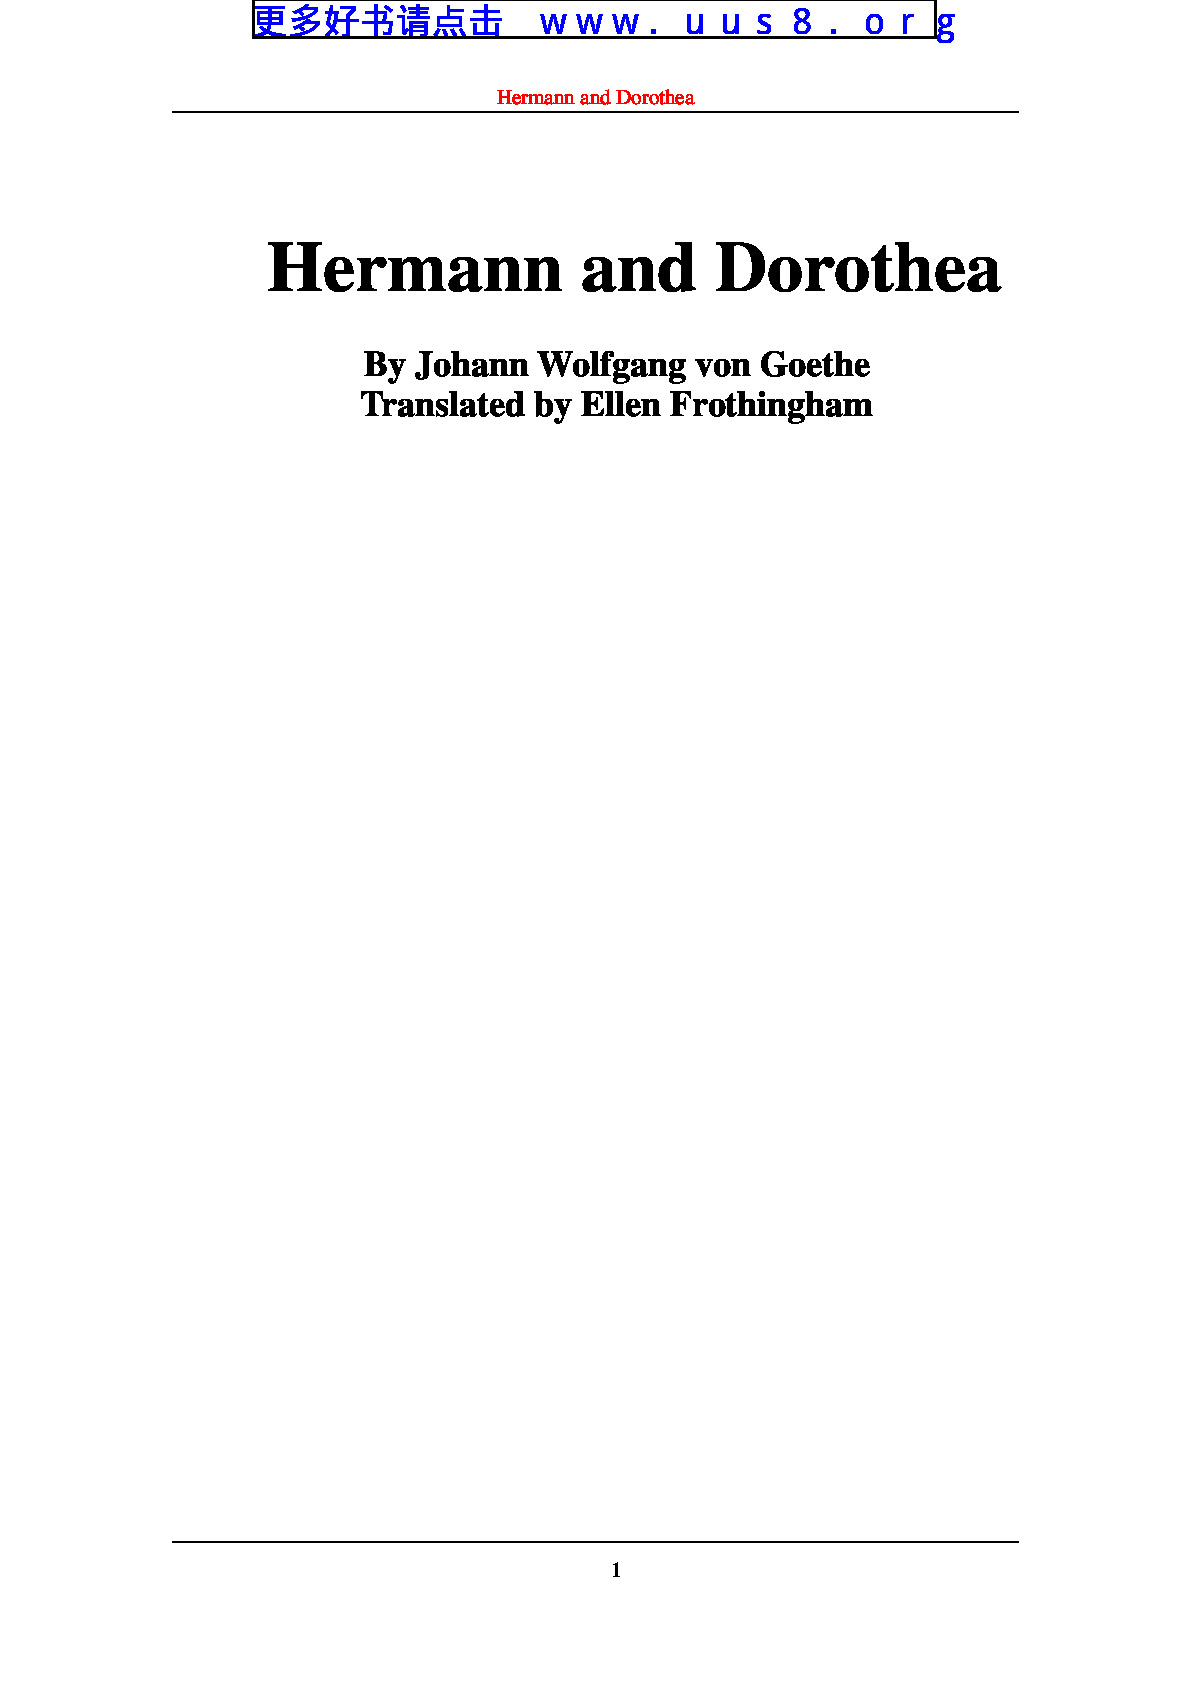 Hermann_and_Dorothea(赫曼和多罗西亚)